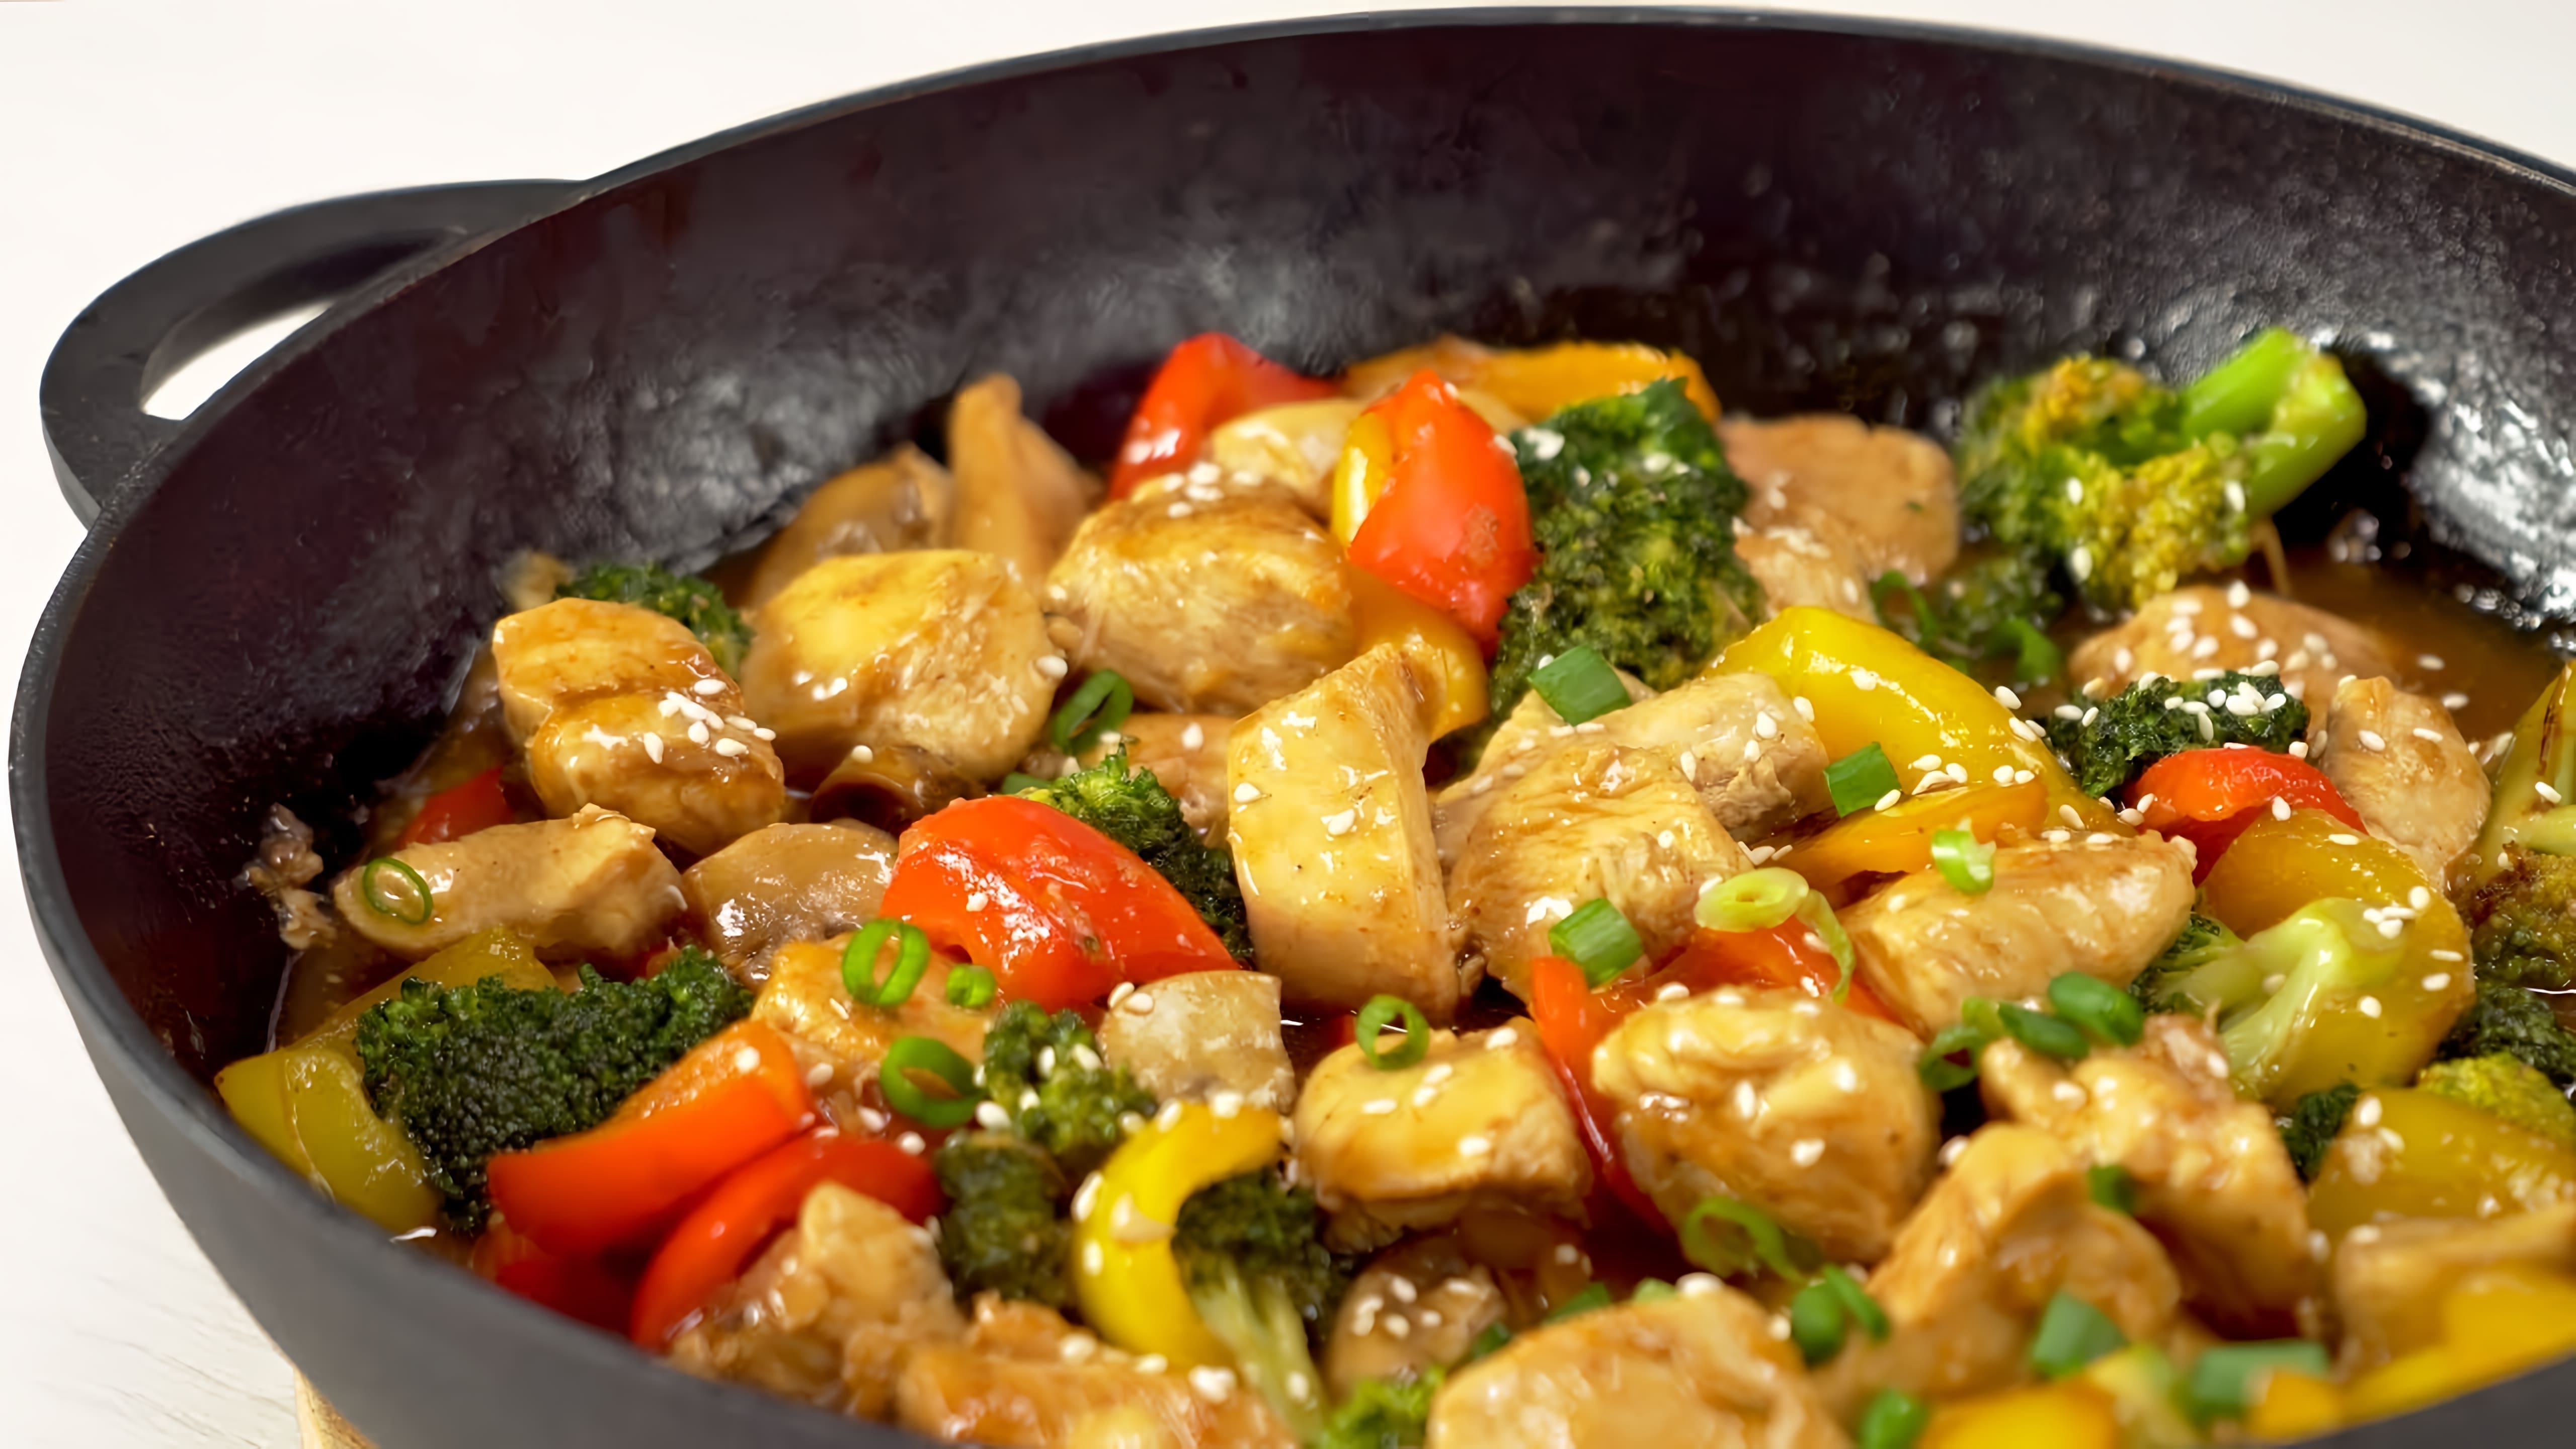 В этом видео демонстрируется рецепт приготовления жареной курицы с овощами по-китайски